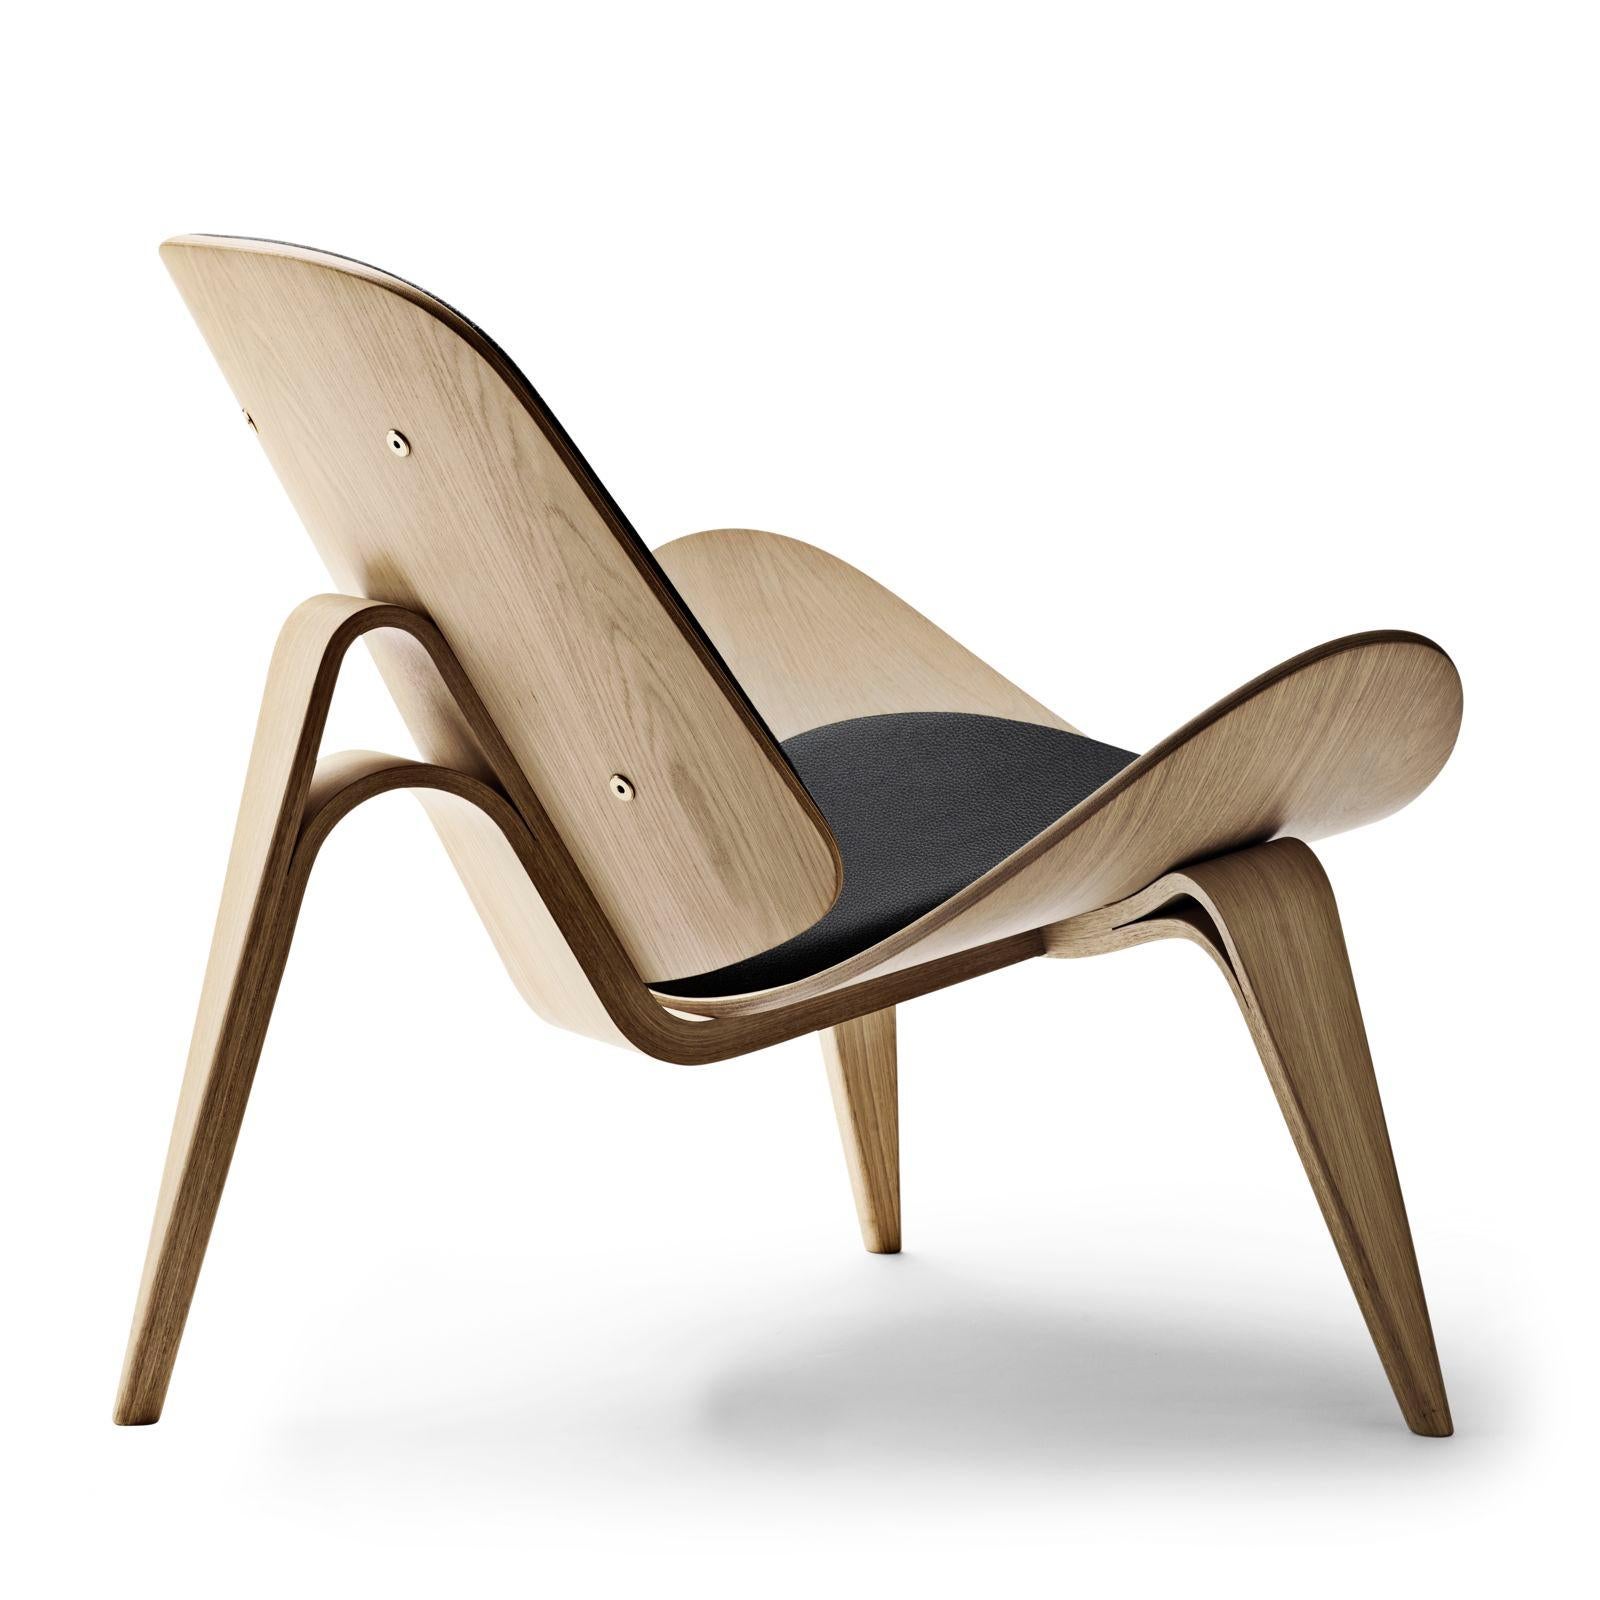 Der CH07 Shell Chair wurde 1963 entworfen, aber das Design war seiner Zeit voraus und wartete daher geduldig mehrere Jahrzehnte lang auf das Rampenlicht. Heute gilt er als einer der ikonischsten und bahnbrechendsten Entwürfe von Hans J. Wegner.